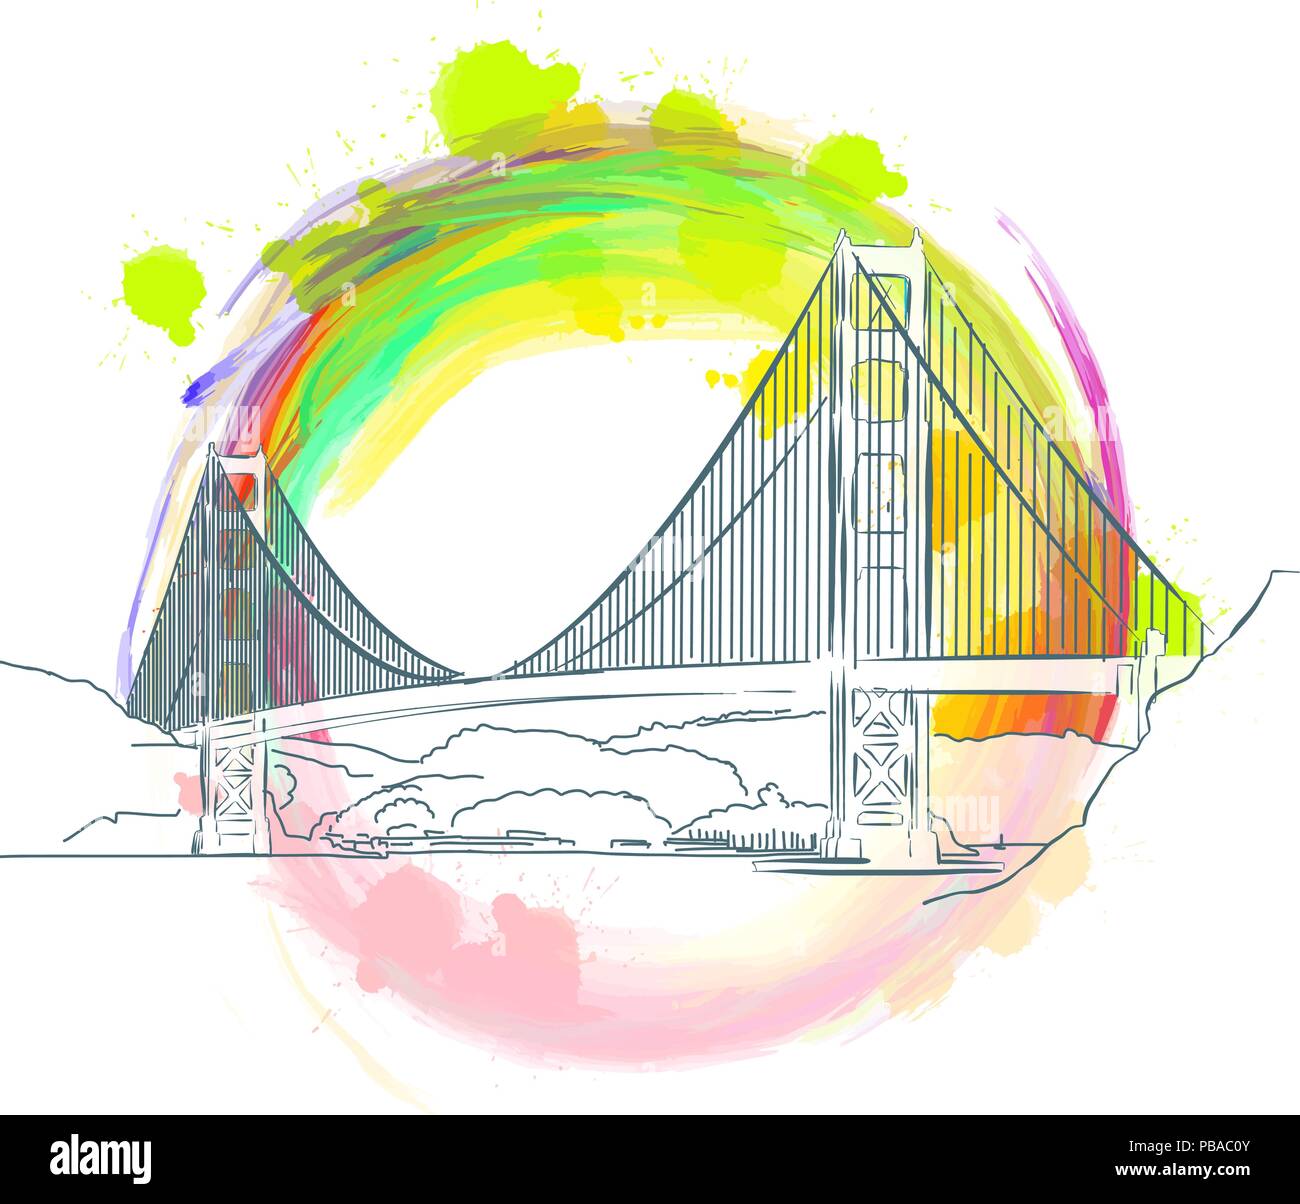 Repère de couleur de Golden Gate Bridge, près de san francisco. Croquis vecteur dessiné à la main. Illustration de Vecteur